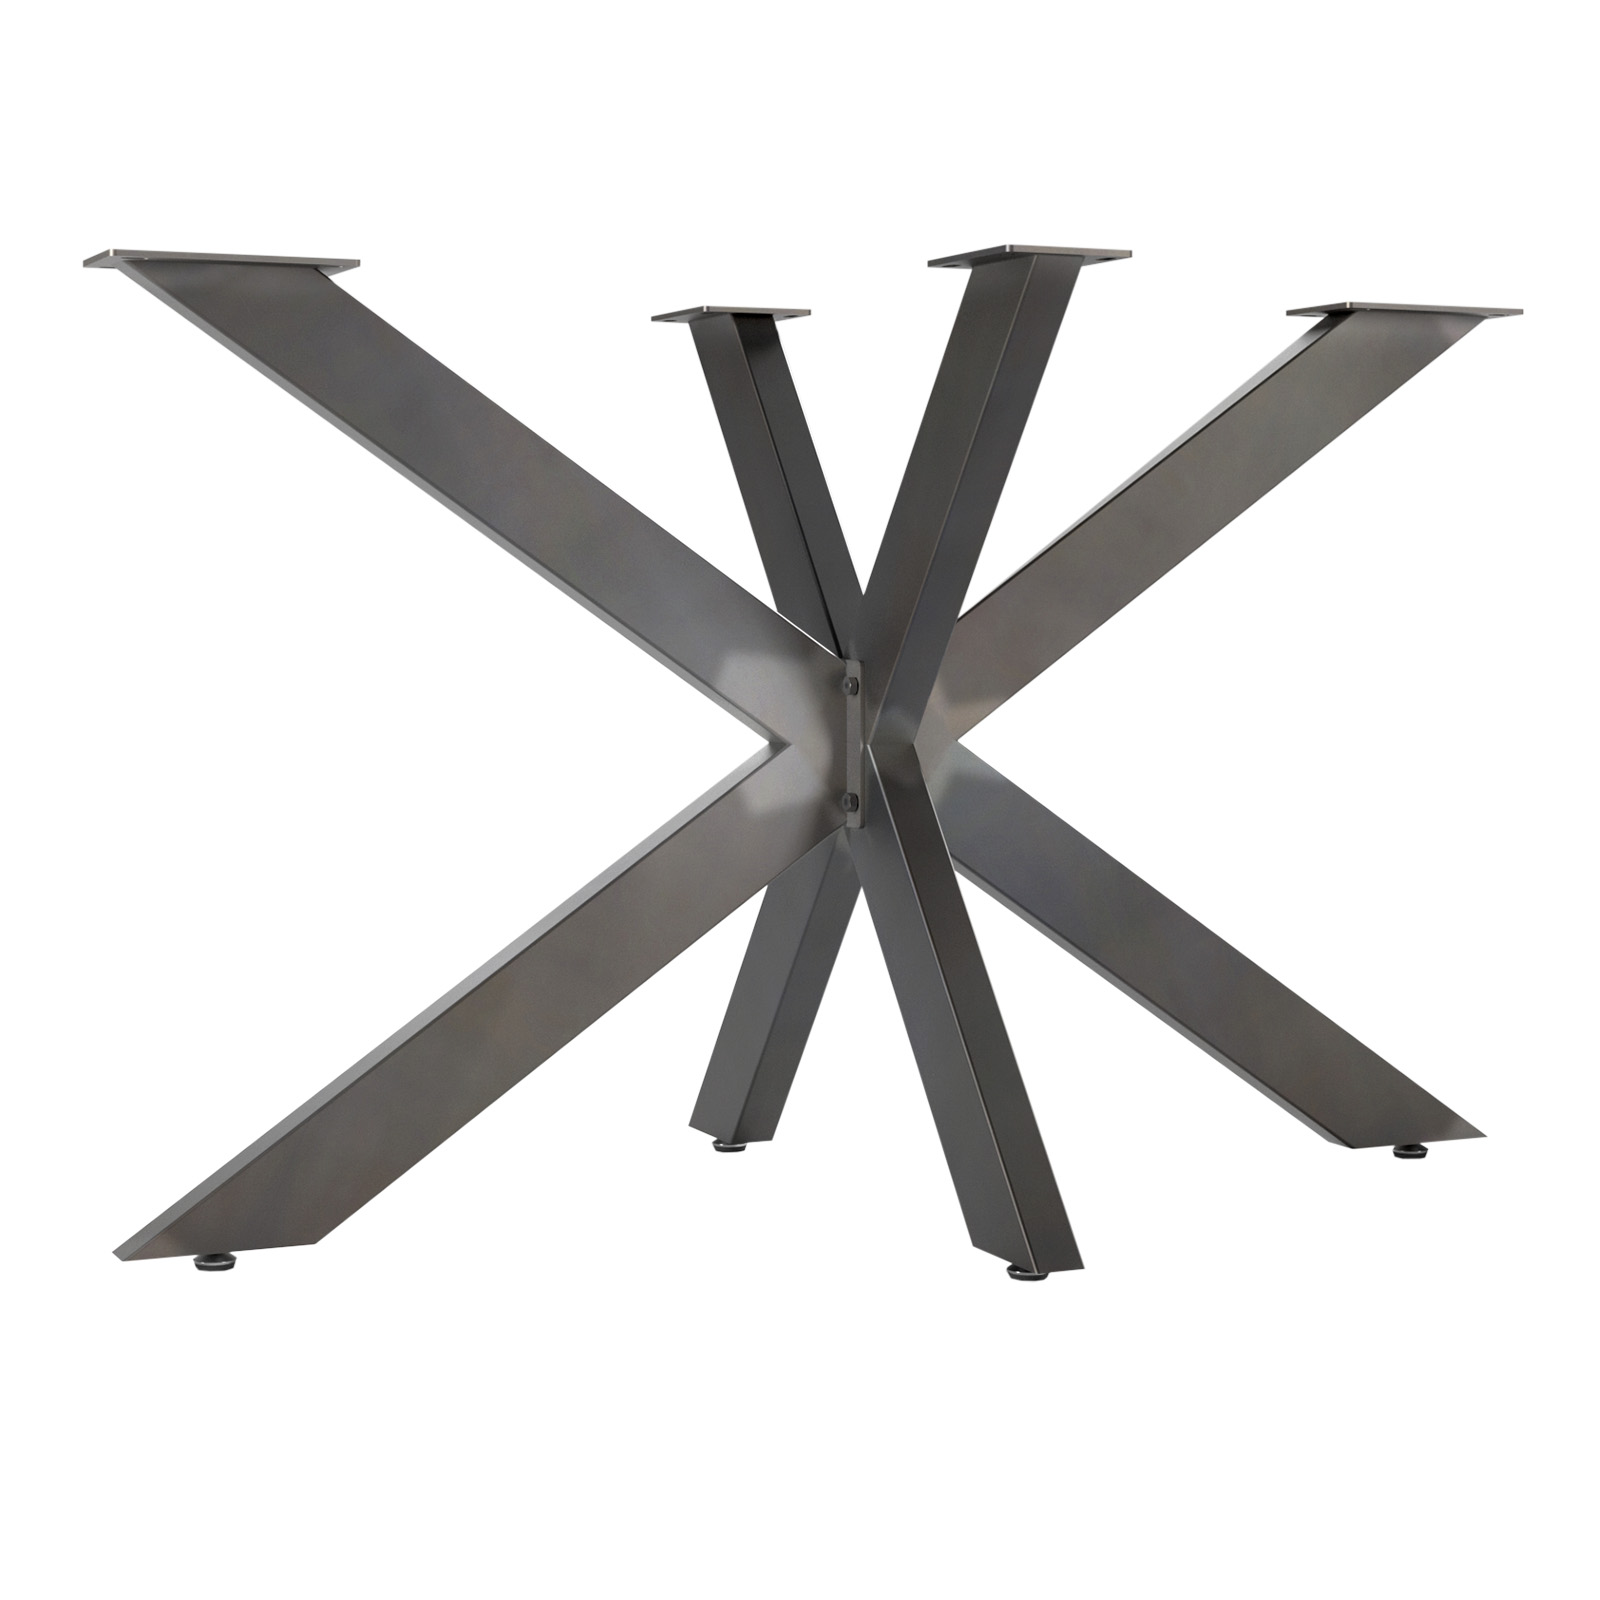 TISCHGESTELL SPIDER Tischkufen Schwerlast Tischbein Design metall Kreuzgestell